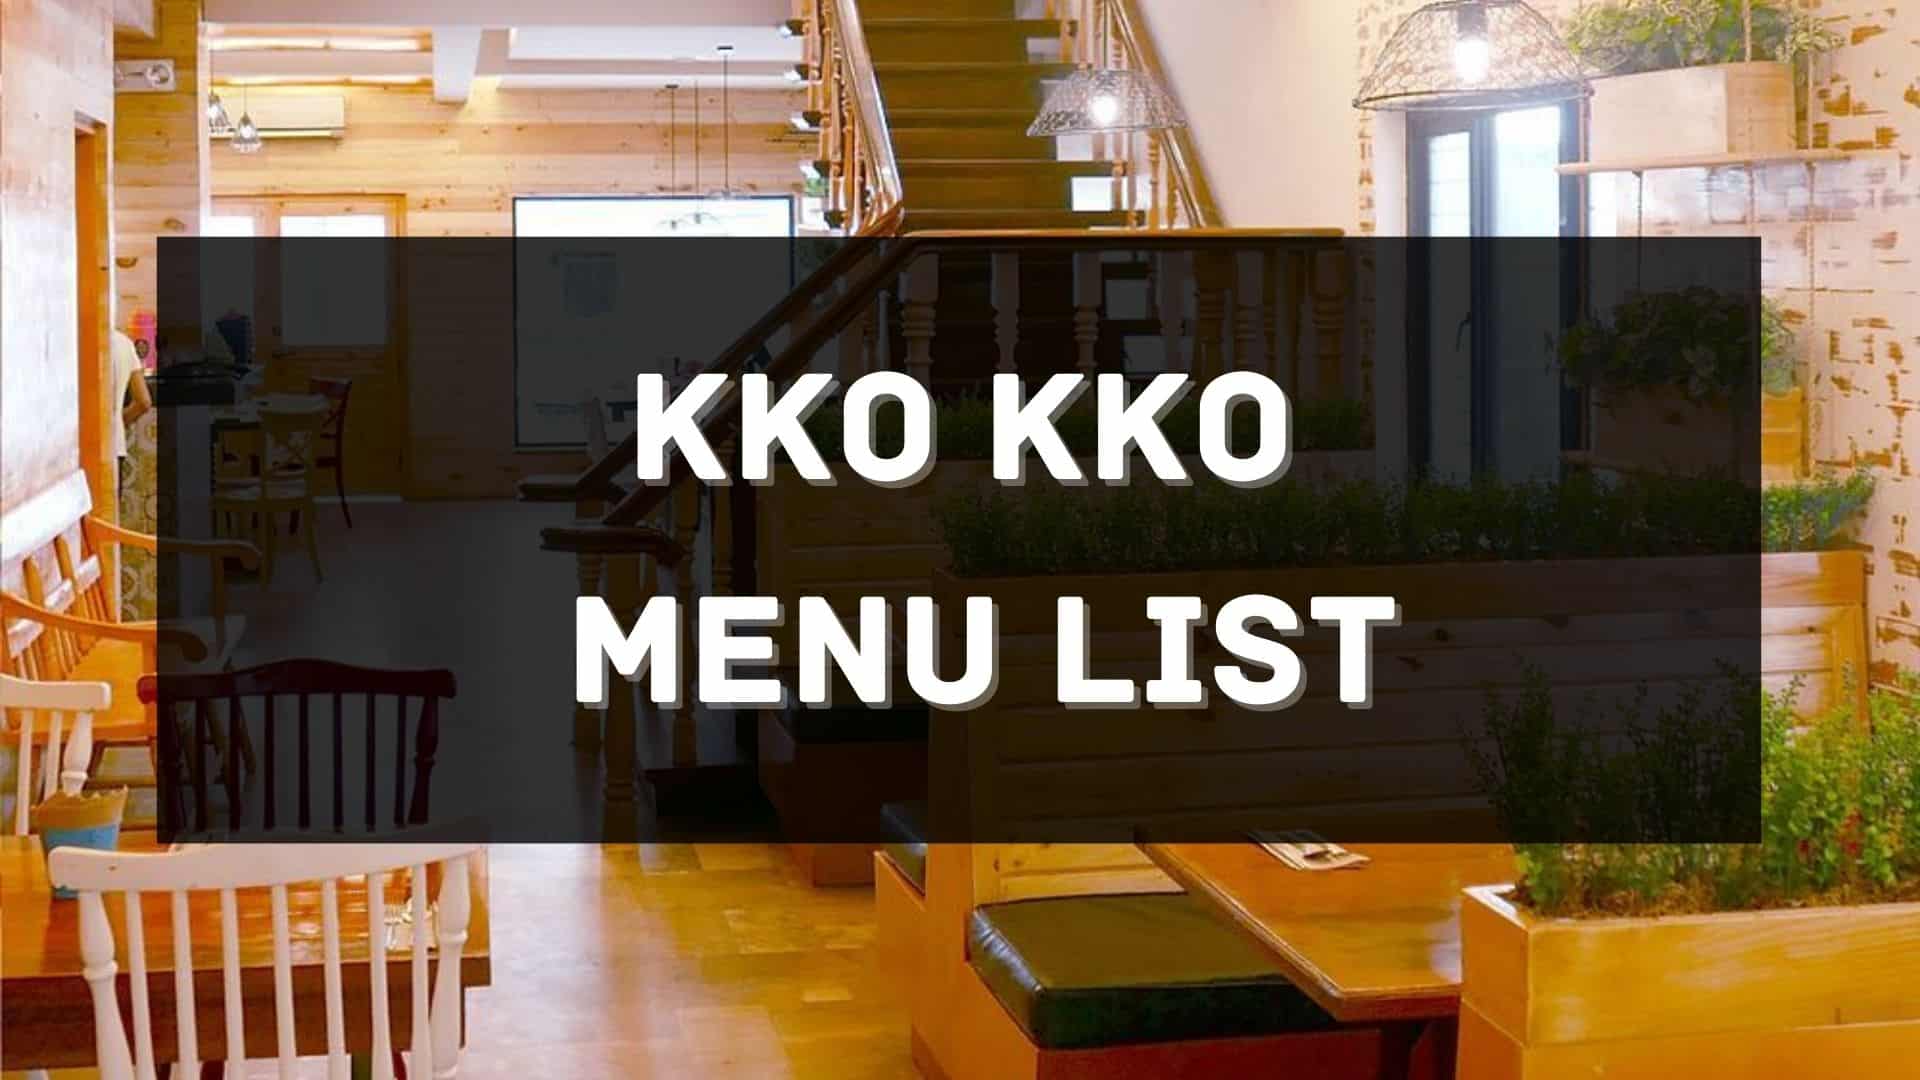 kko kko menu prices philippines